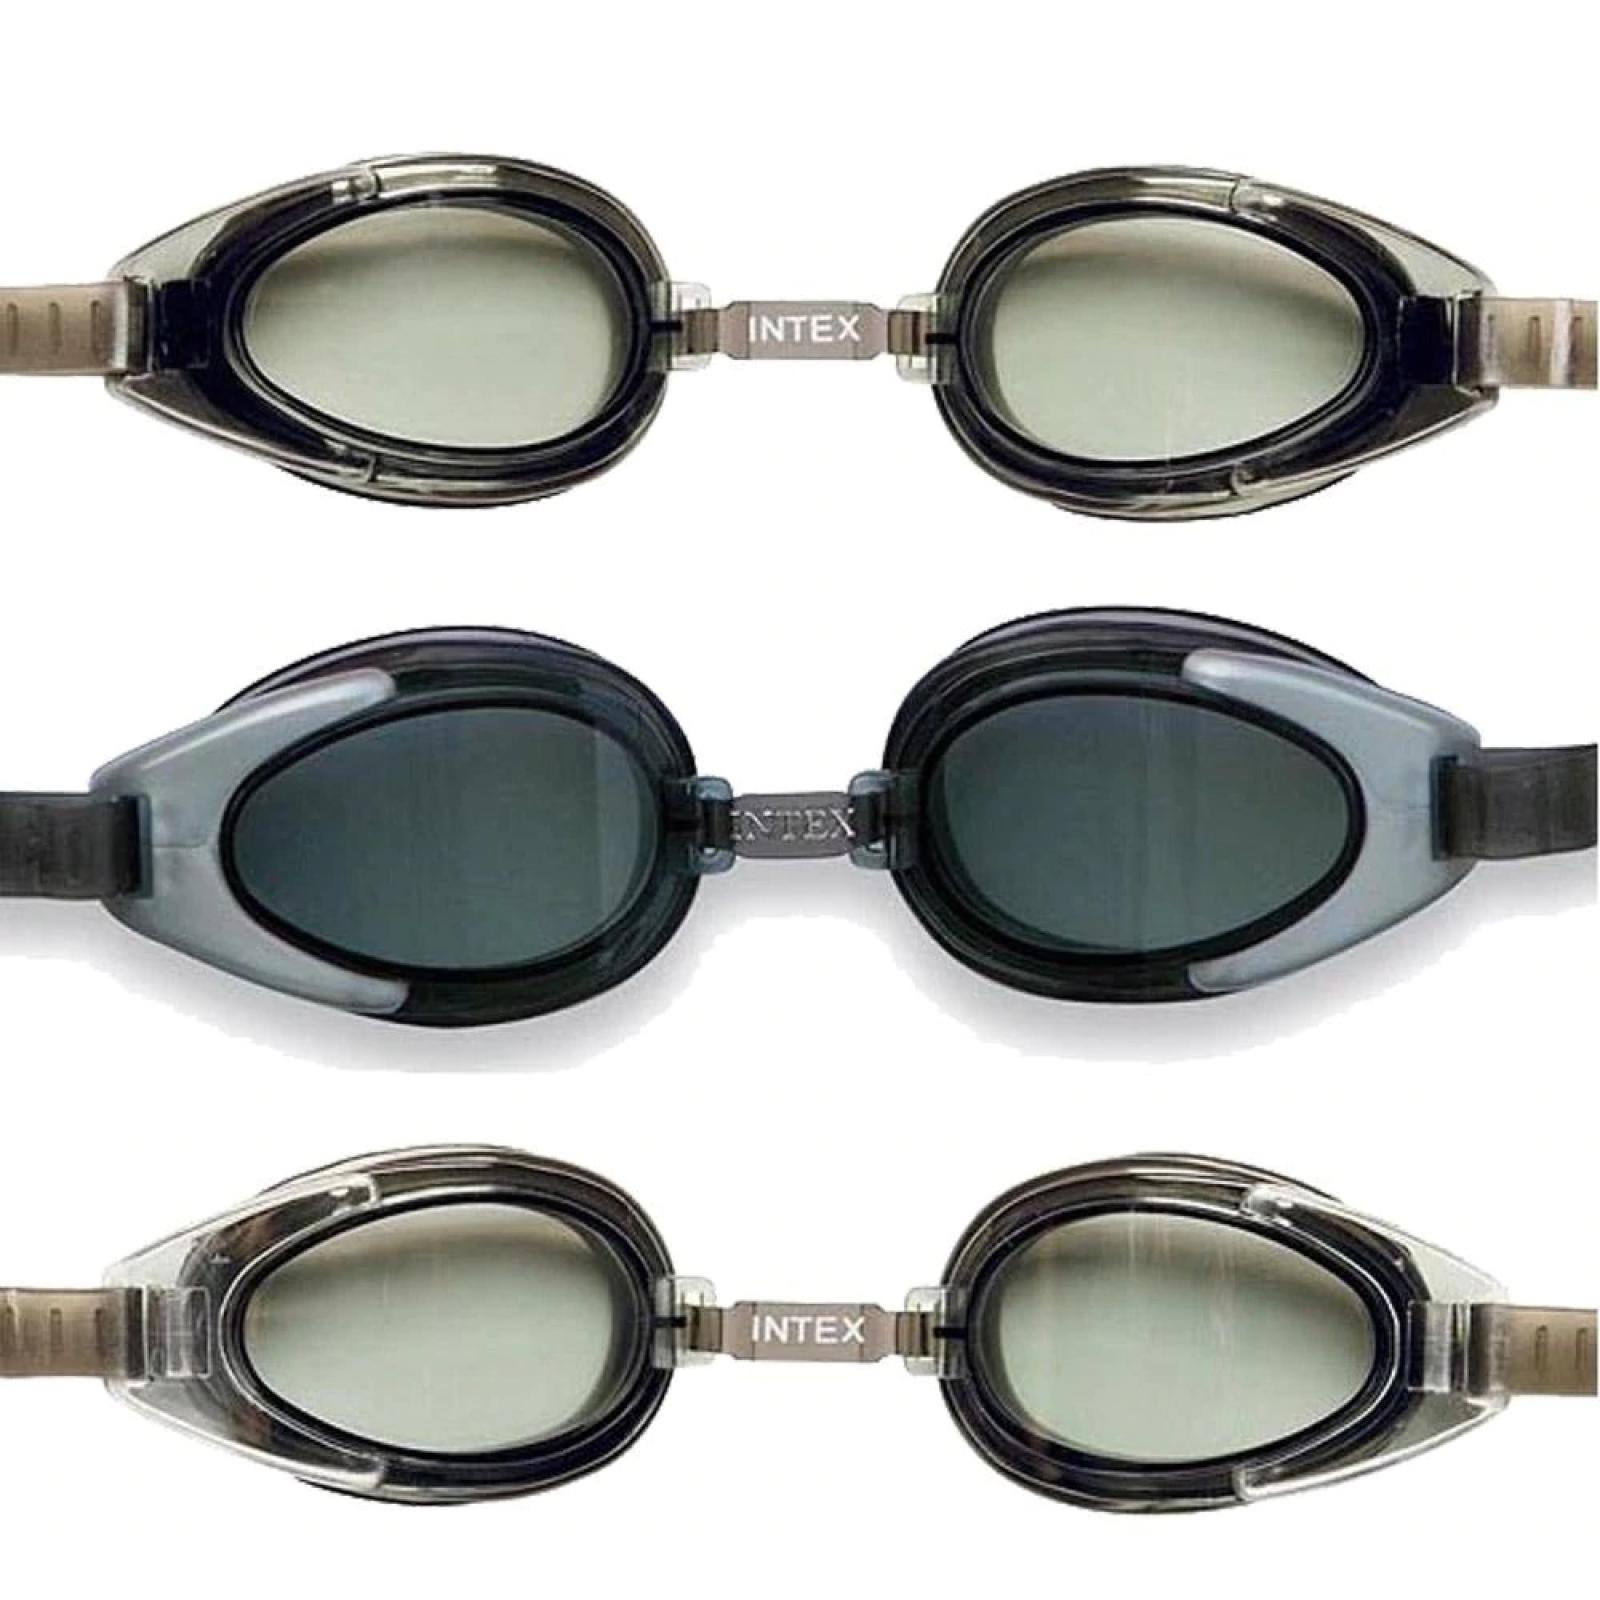 Intex Aquaflow Sport Goggles